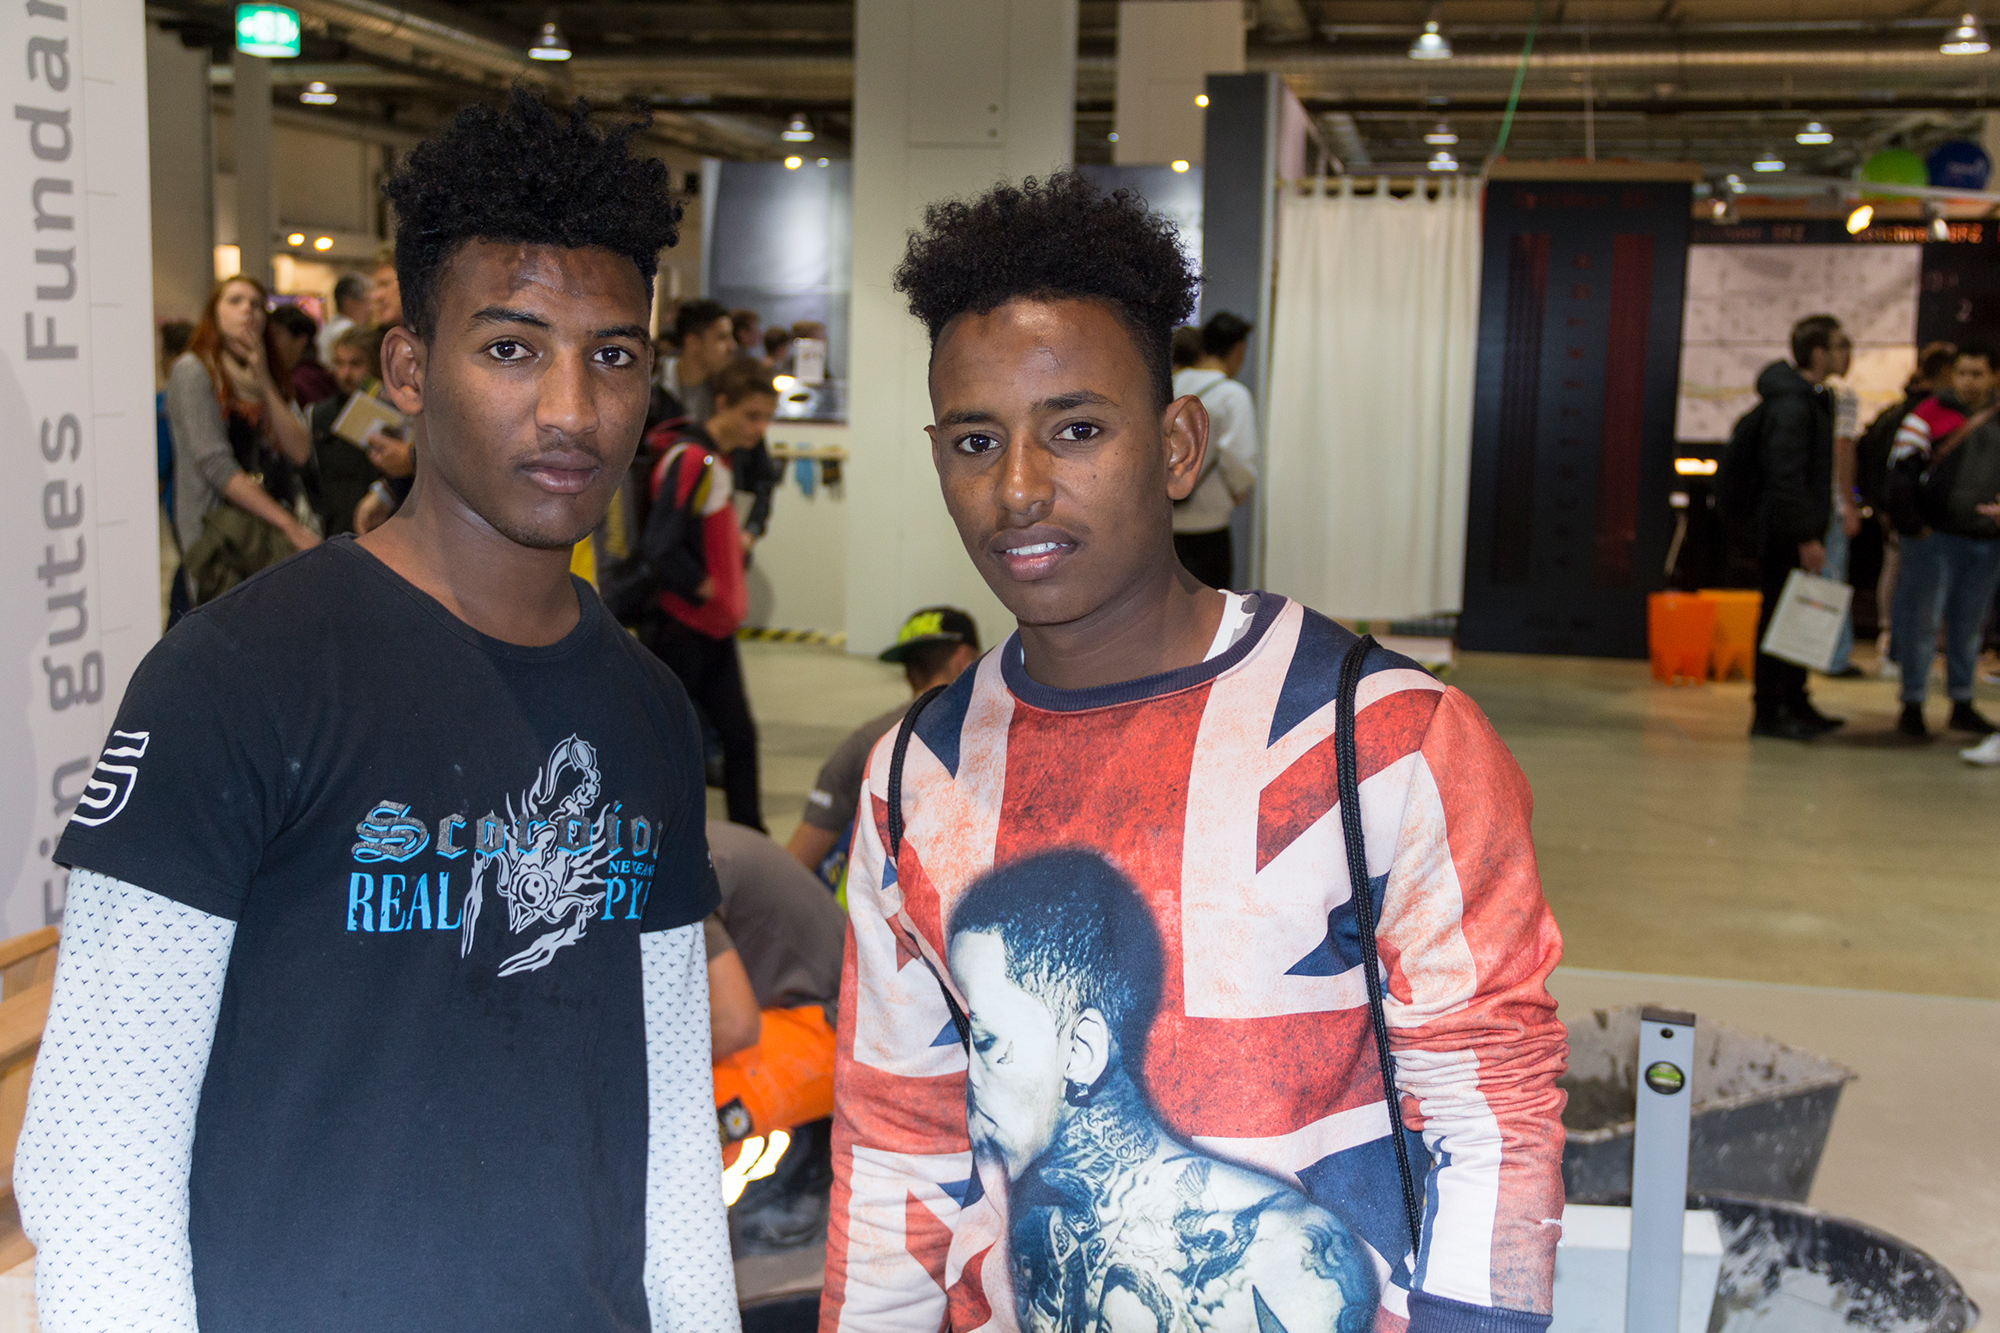 «Strassenbau, das liebe ich», sagt Nasradin. Er und sein Freund Jonas sind begeistert von der improvisierten Baustelle. Die beiden 18-Jährigen sind erst seit zwei Jahren von Eritrea in die Schweiz gekommen.